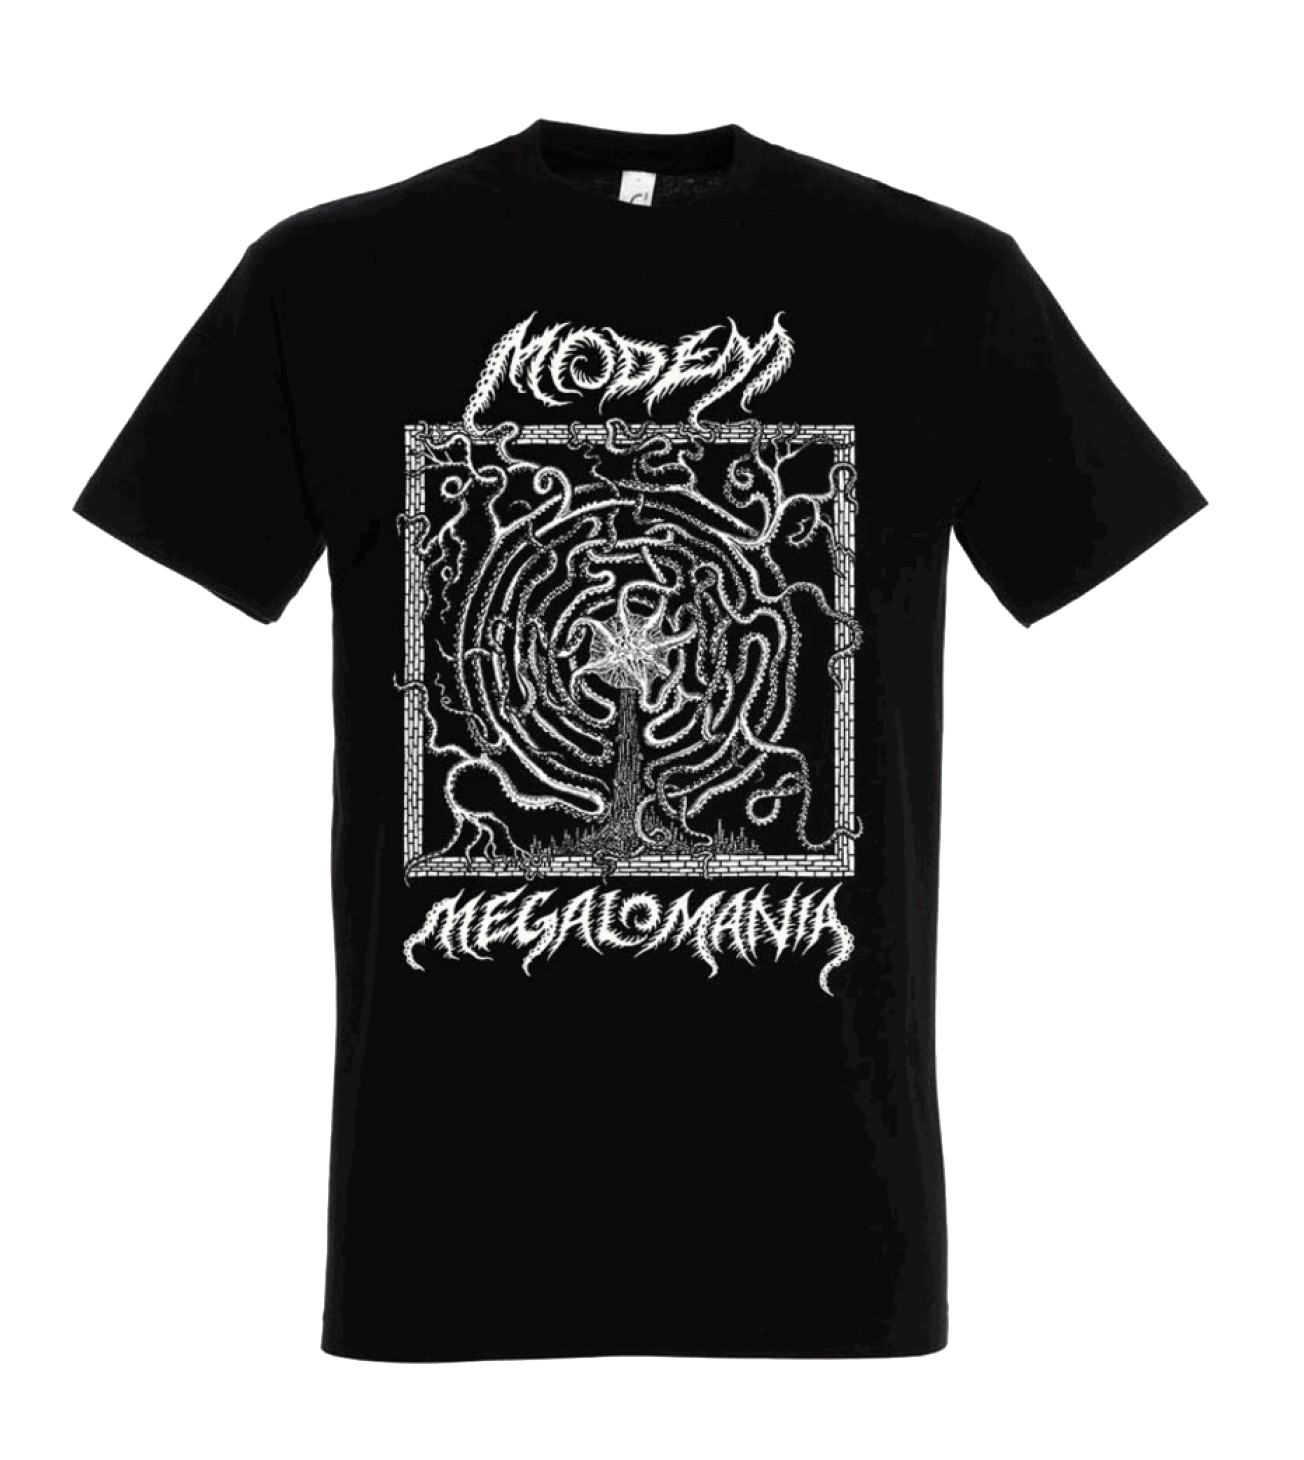 Modem "Megalomania" T-Shirt